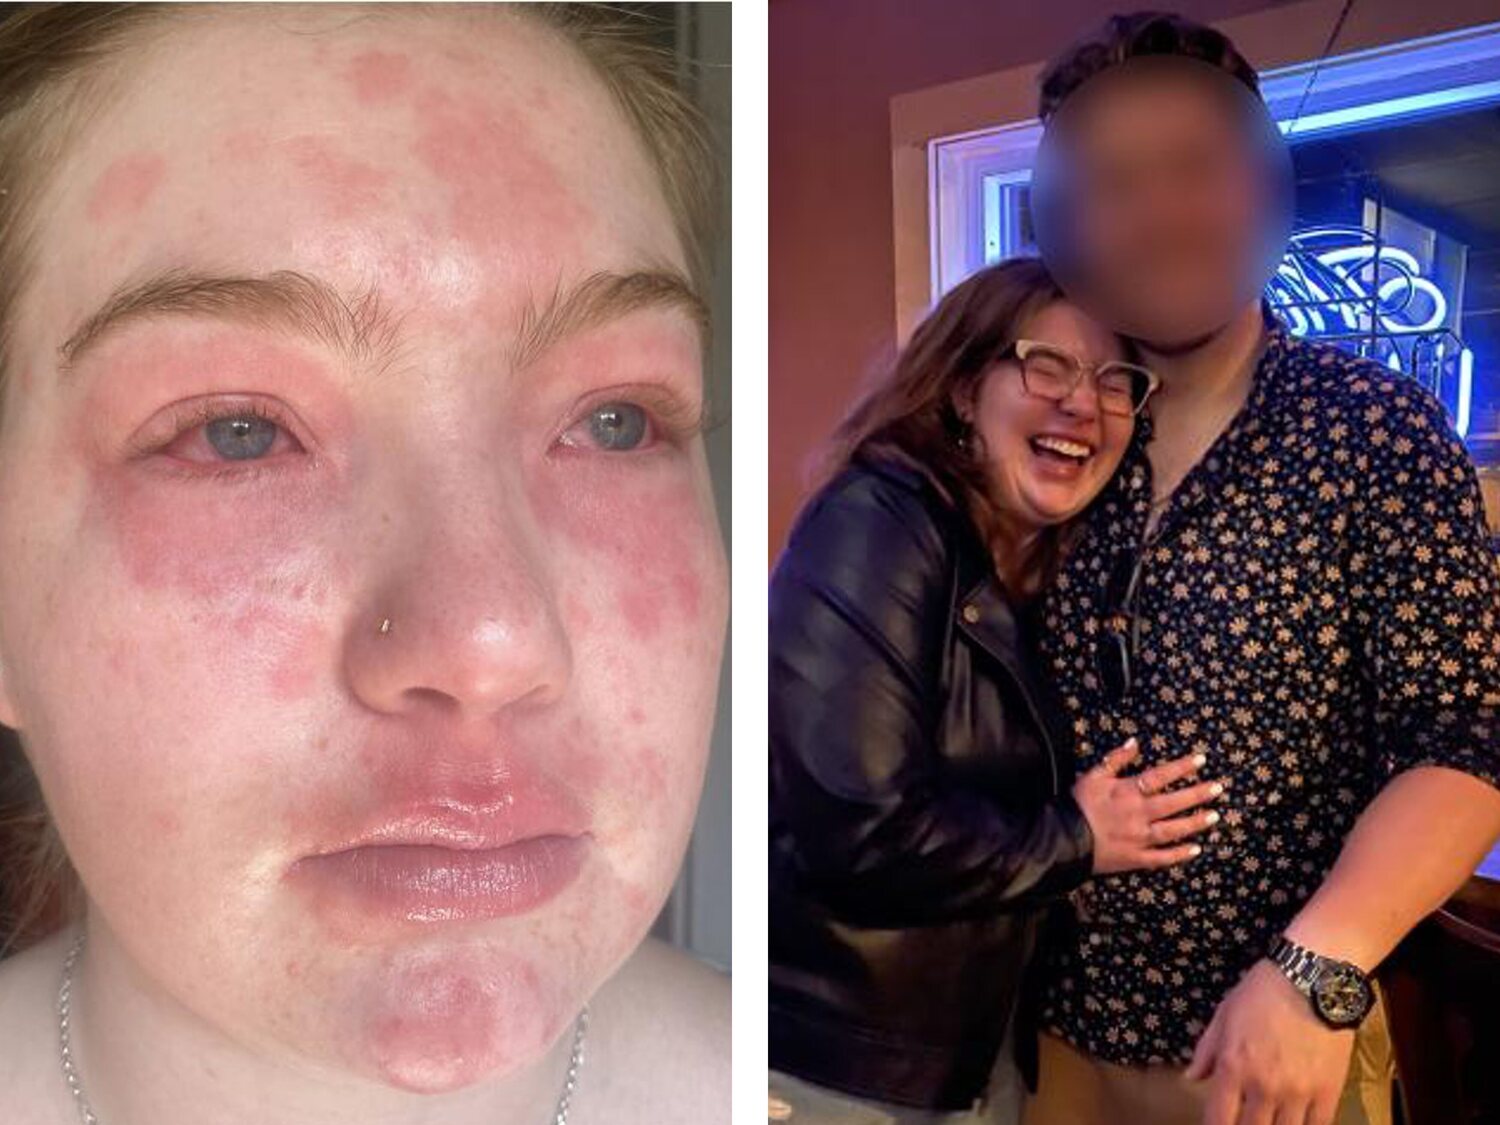 "Soy alérgica a mi novio": la erupción que sufre una joven al pasar tiempo con su pareja